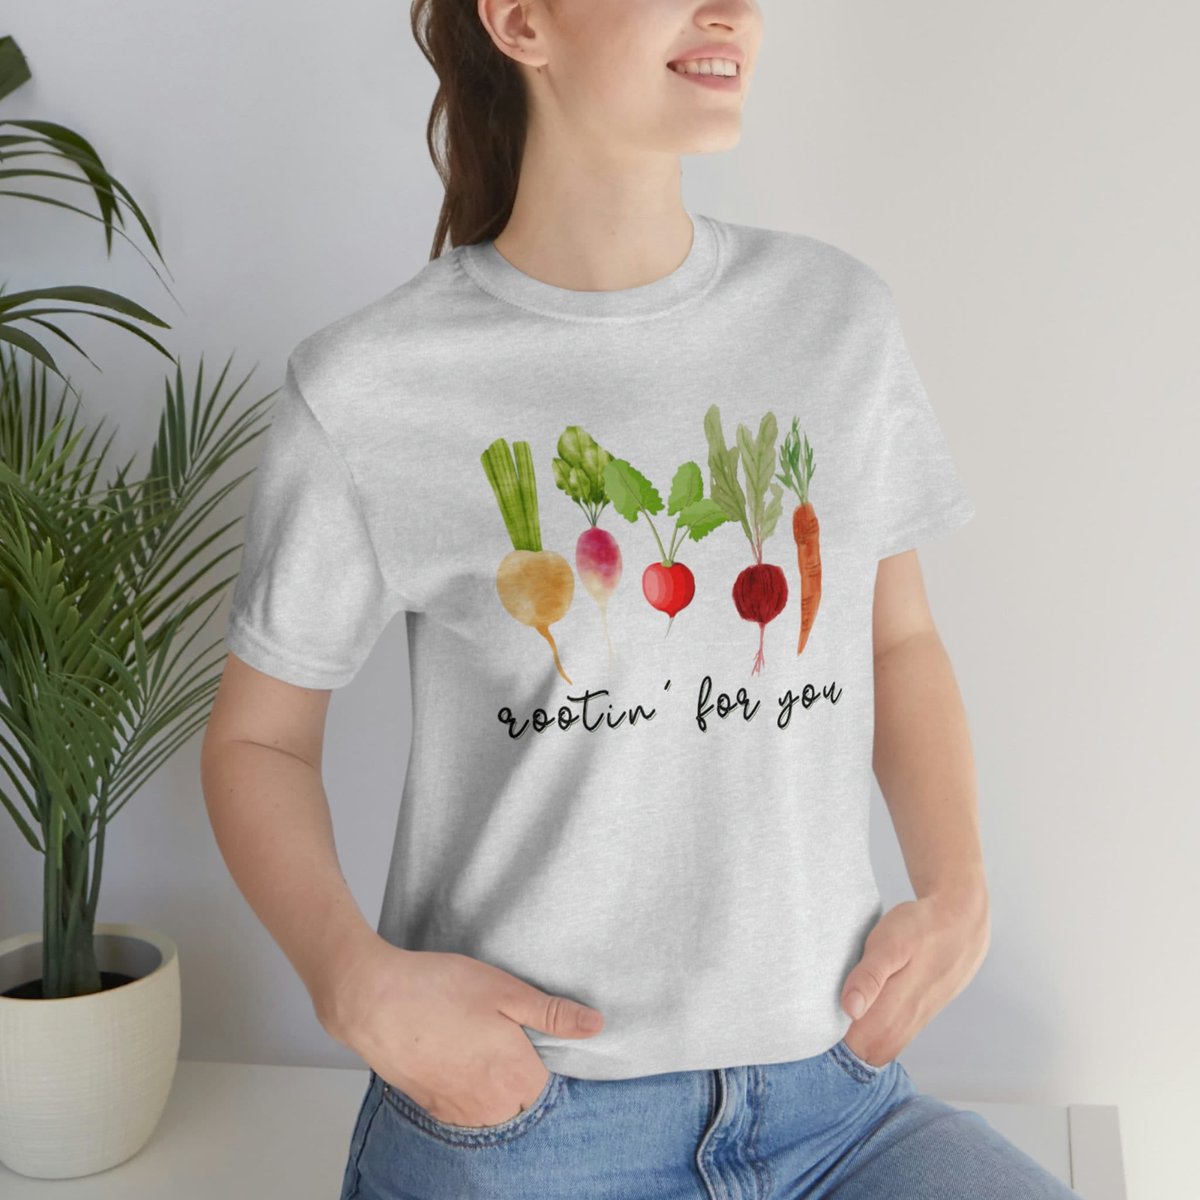 #plantingshirt #funnygardening #rootingforyou #springshirt #giftforgardener #gardeningshirt #gardeningtips #giftforgardner #plantlovershirt etsy.me/41819cr